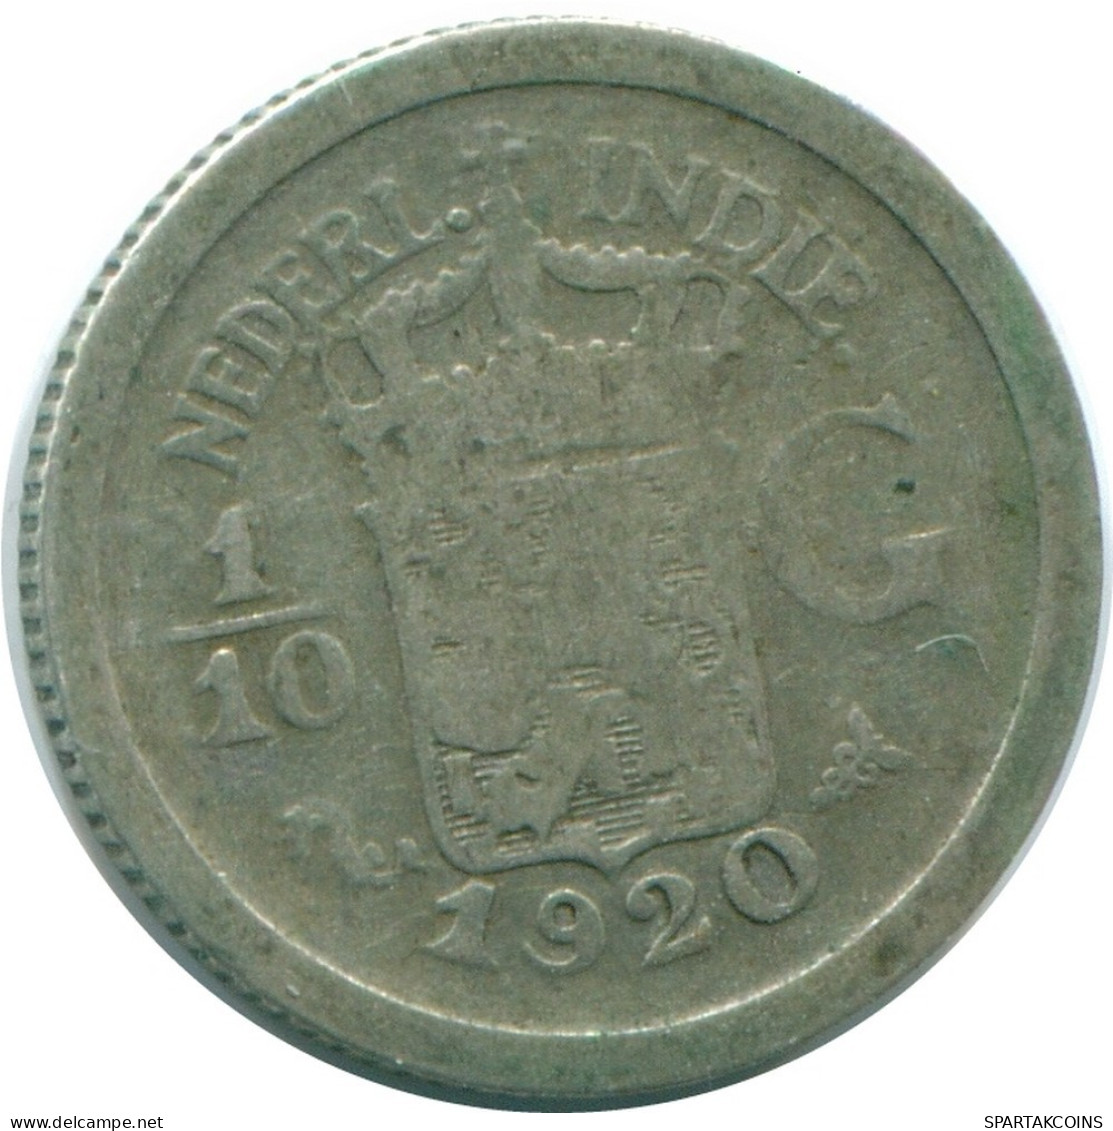 1/10 GULDEN 1920 NIEDERLANDE OSTINDIEN SILBER Koloniale Münze #NL13374.3.D.A - Indie Olandesi